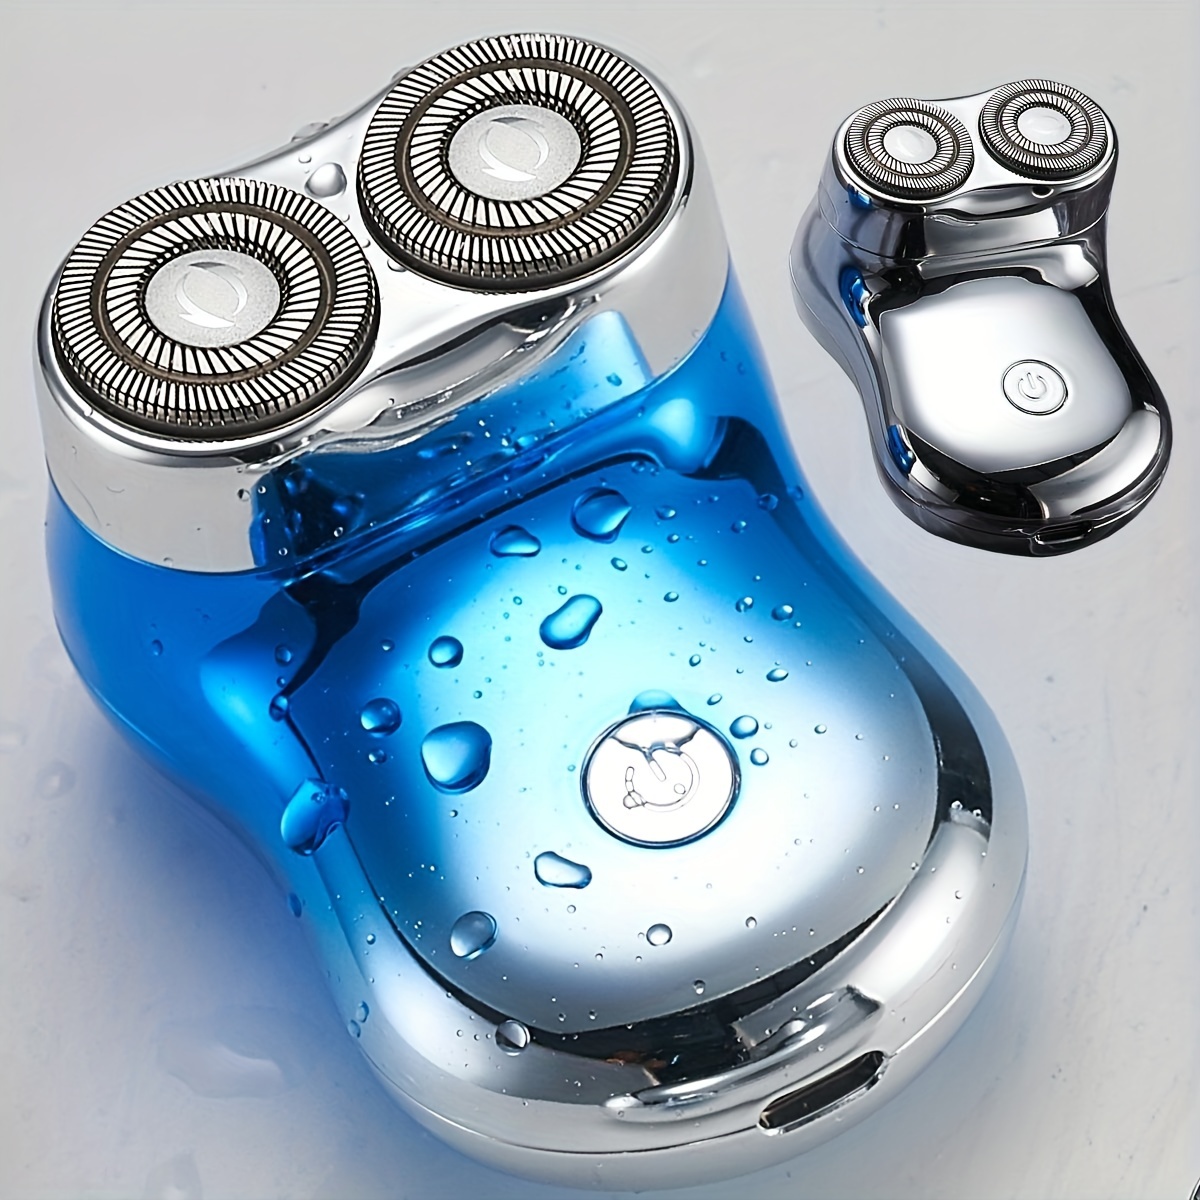 Comprar Mini Afeitadora eléctrica portátil IPX7, resistente al agua, seco  en húmedo, doble uso, tipo c, carga rápida, afeitadora de bolsillo,  afeitadora de barba